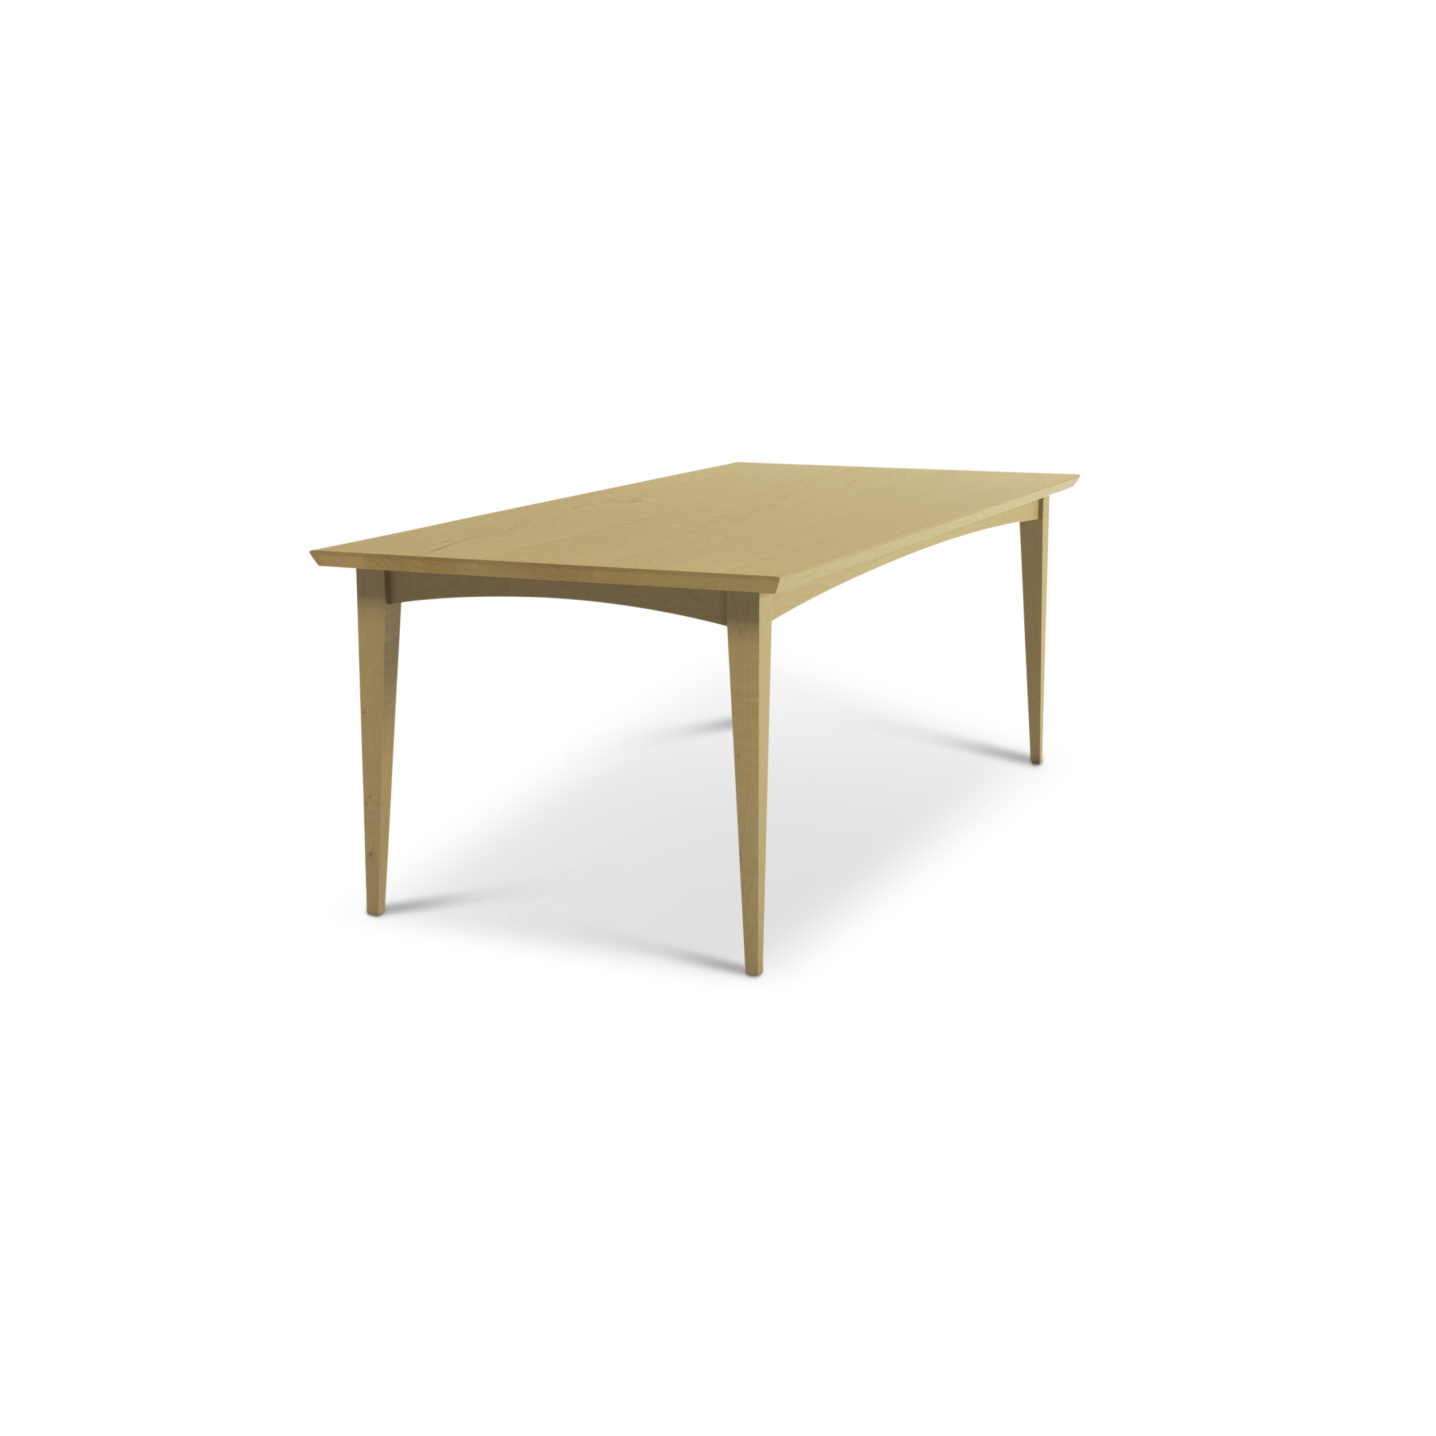 Maple custom mid-century modern table